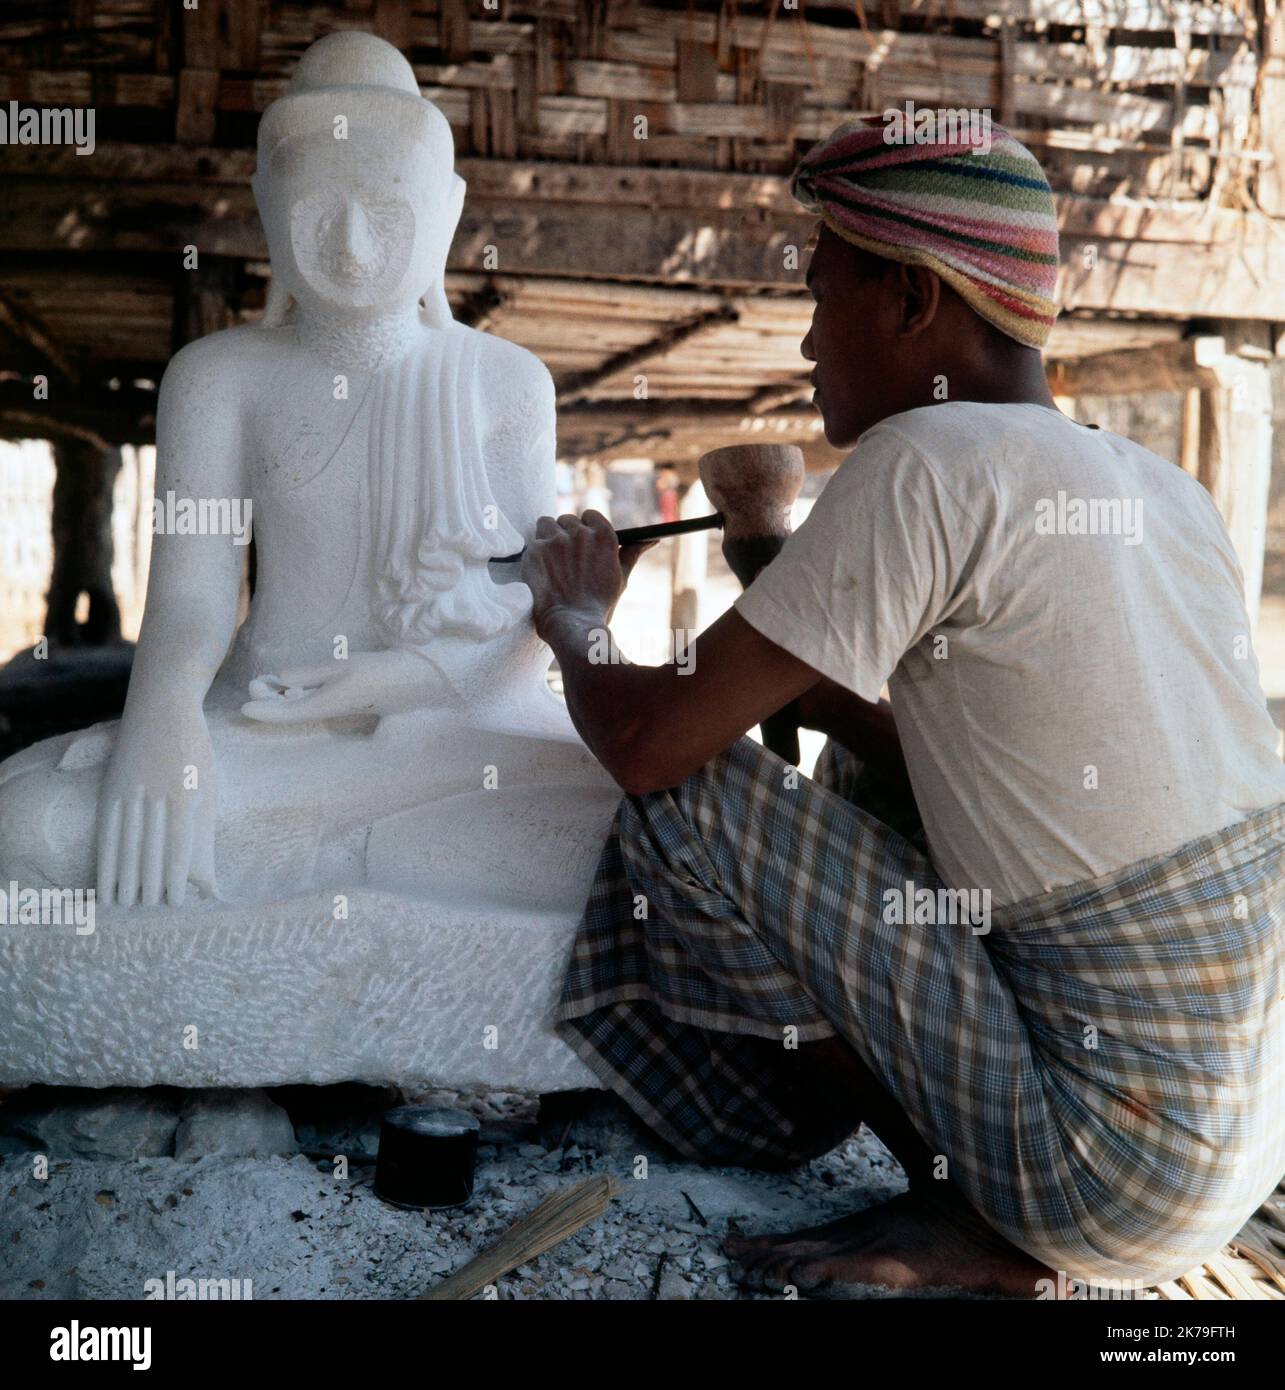 Ein Vintage-Farbfoto aus dem Jahr 1960s, das eine traditionelle Skulptur oder einen Schnitzer zeigt, die an einer Buddha-Statue in Burma arbeitet. Stockfoto